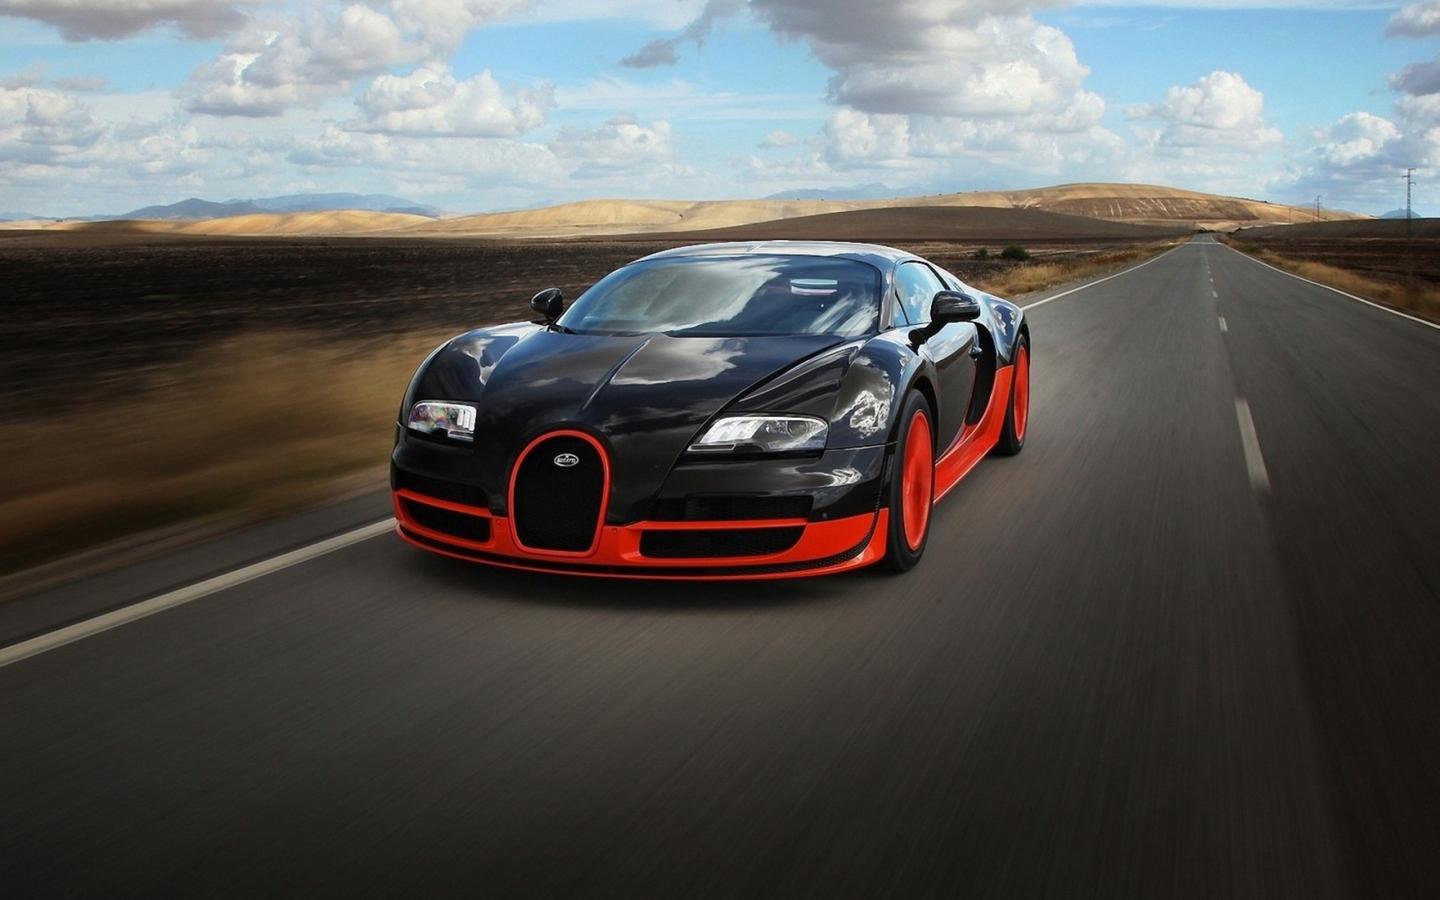 Bugatti Veyron Wallpaper Hd For Laptop - Car Wallpaper Hd Download For  Mobile - 1440x900 Wallpaper 